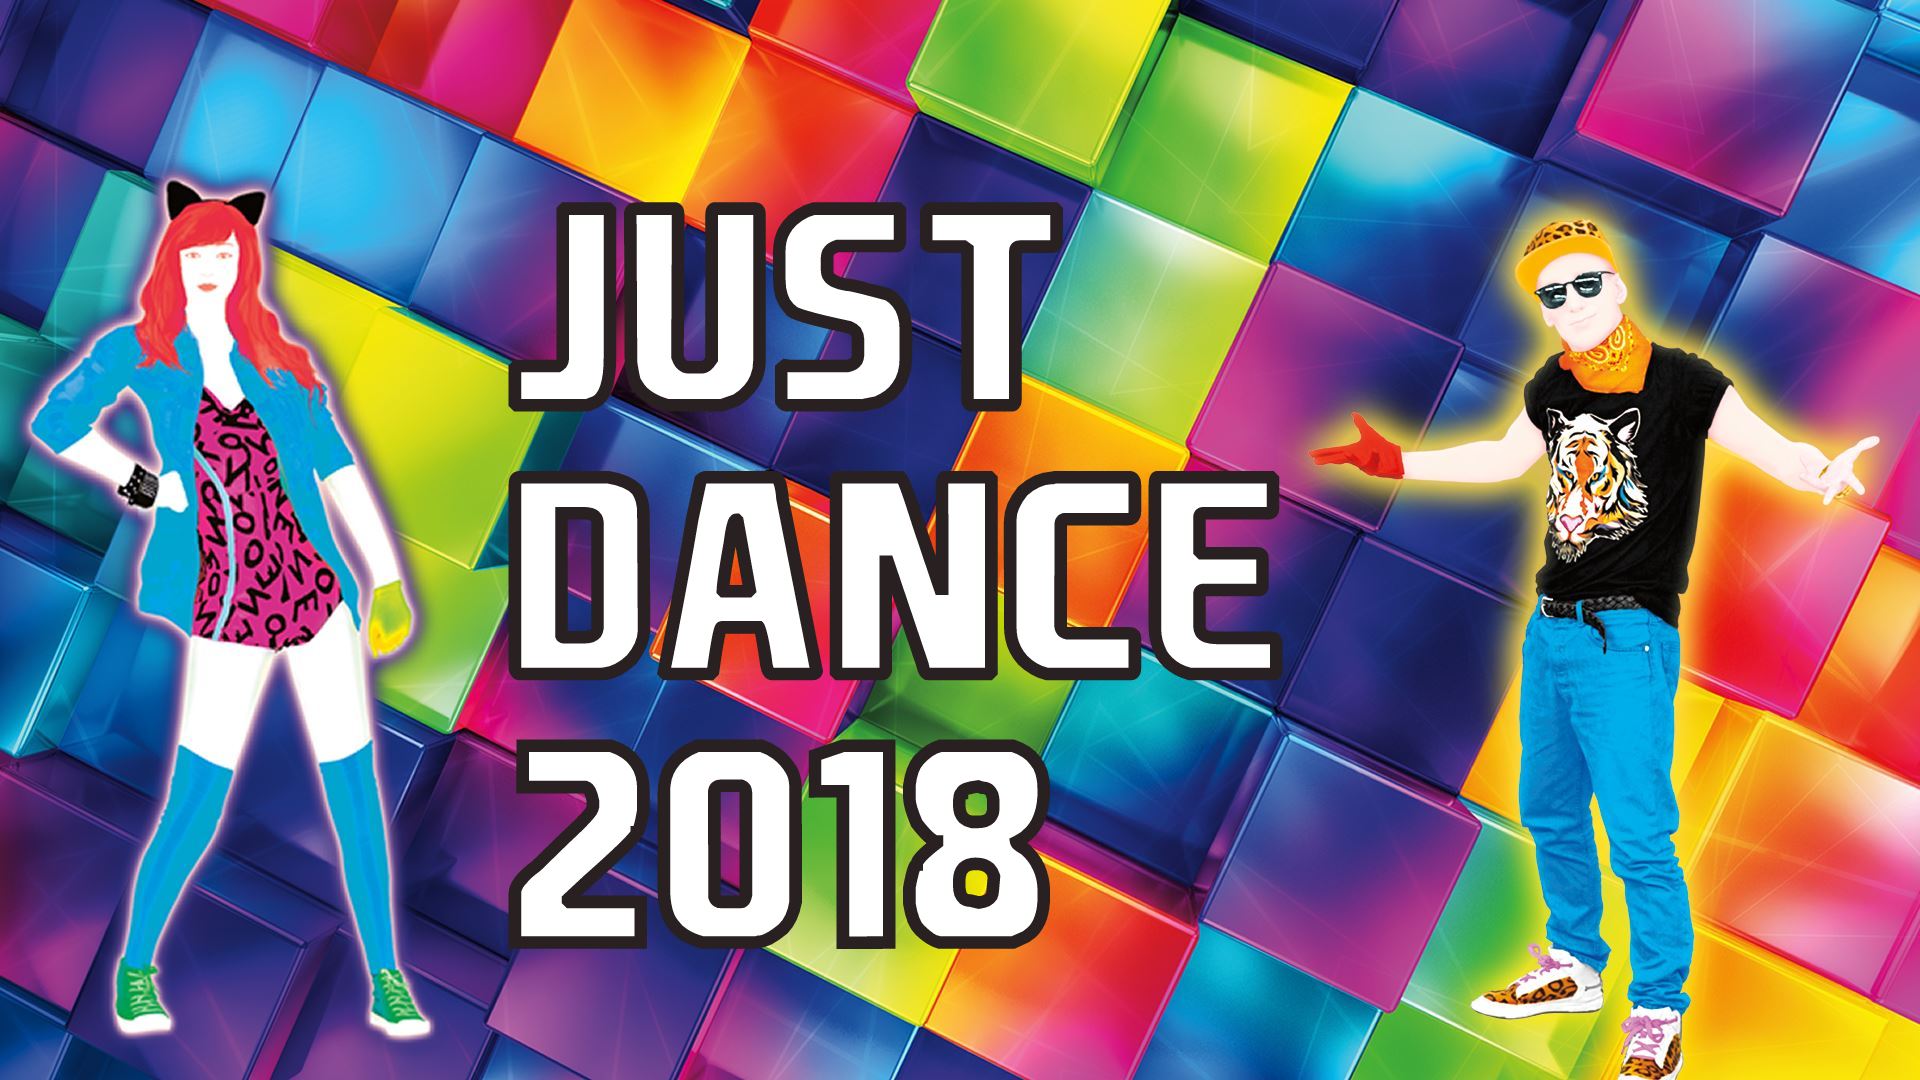 Just Dance 2018 foi apresentado com show no palco, mais uma vez.